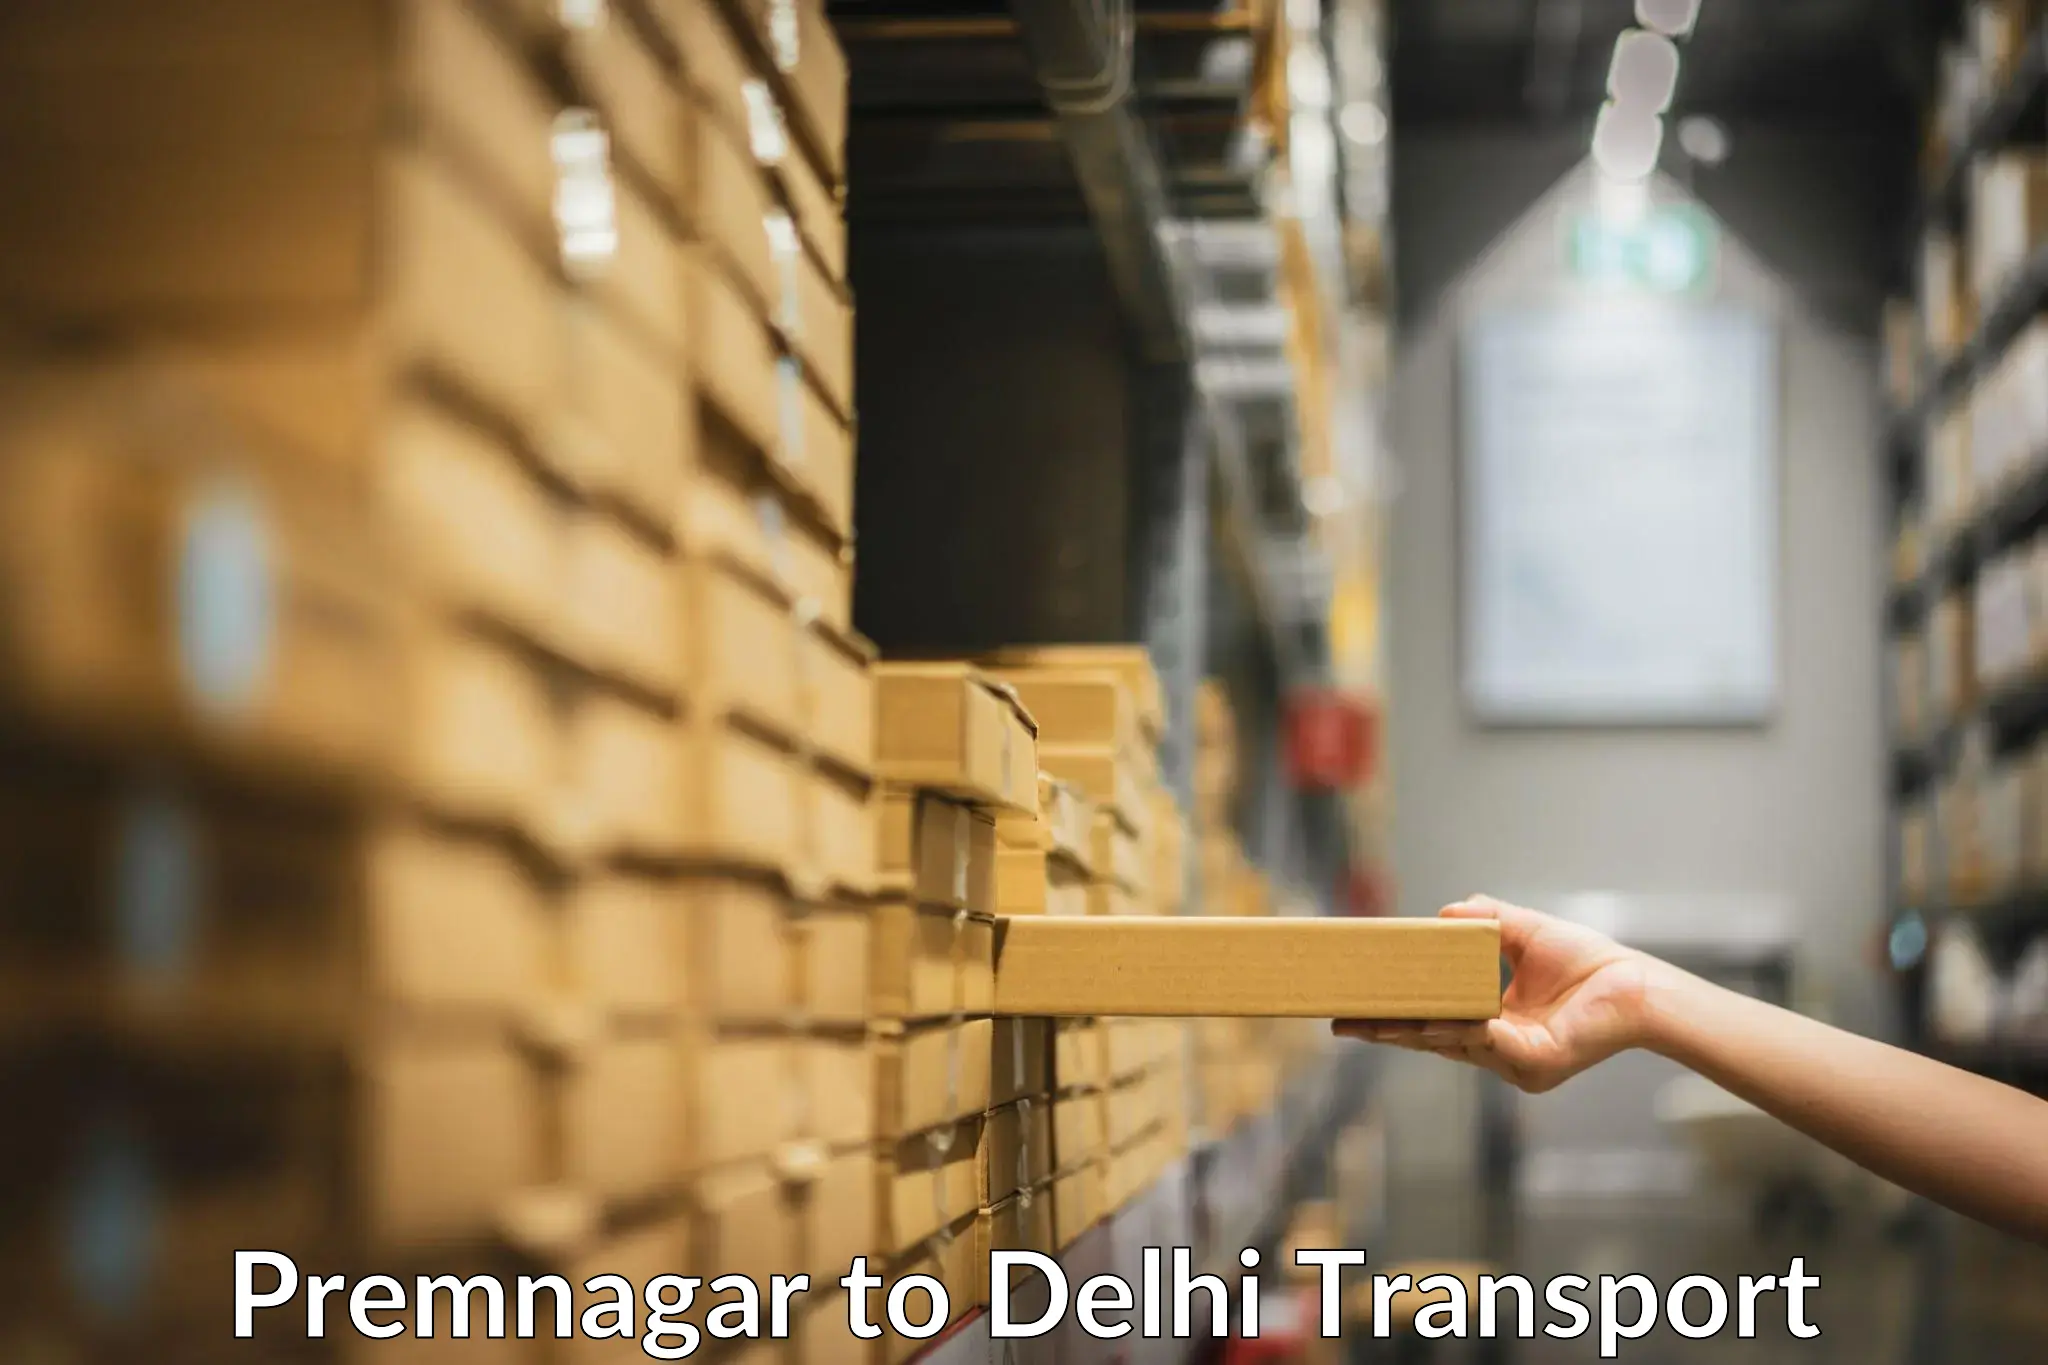 Online transport service Premnagar to East Delhi